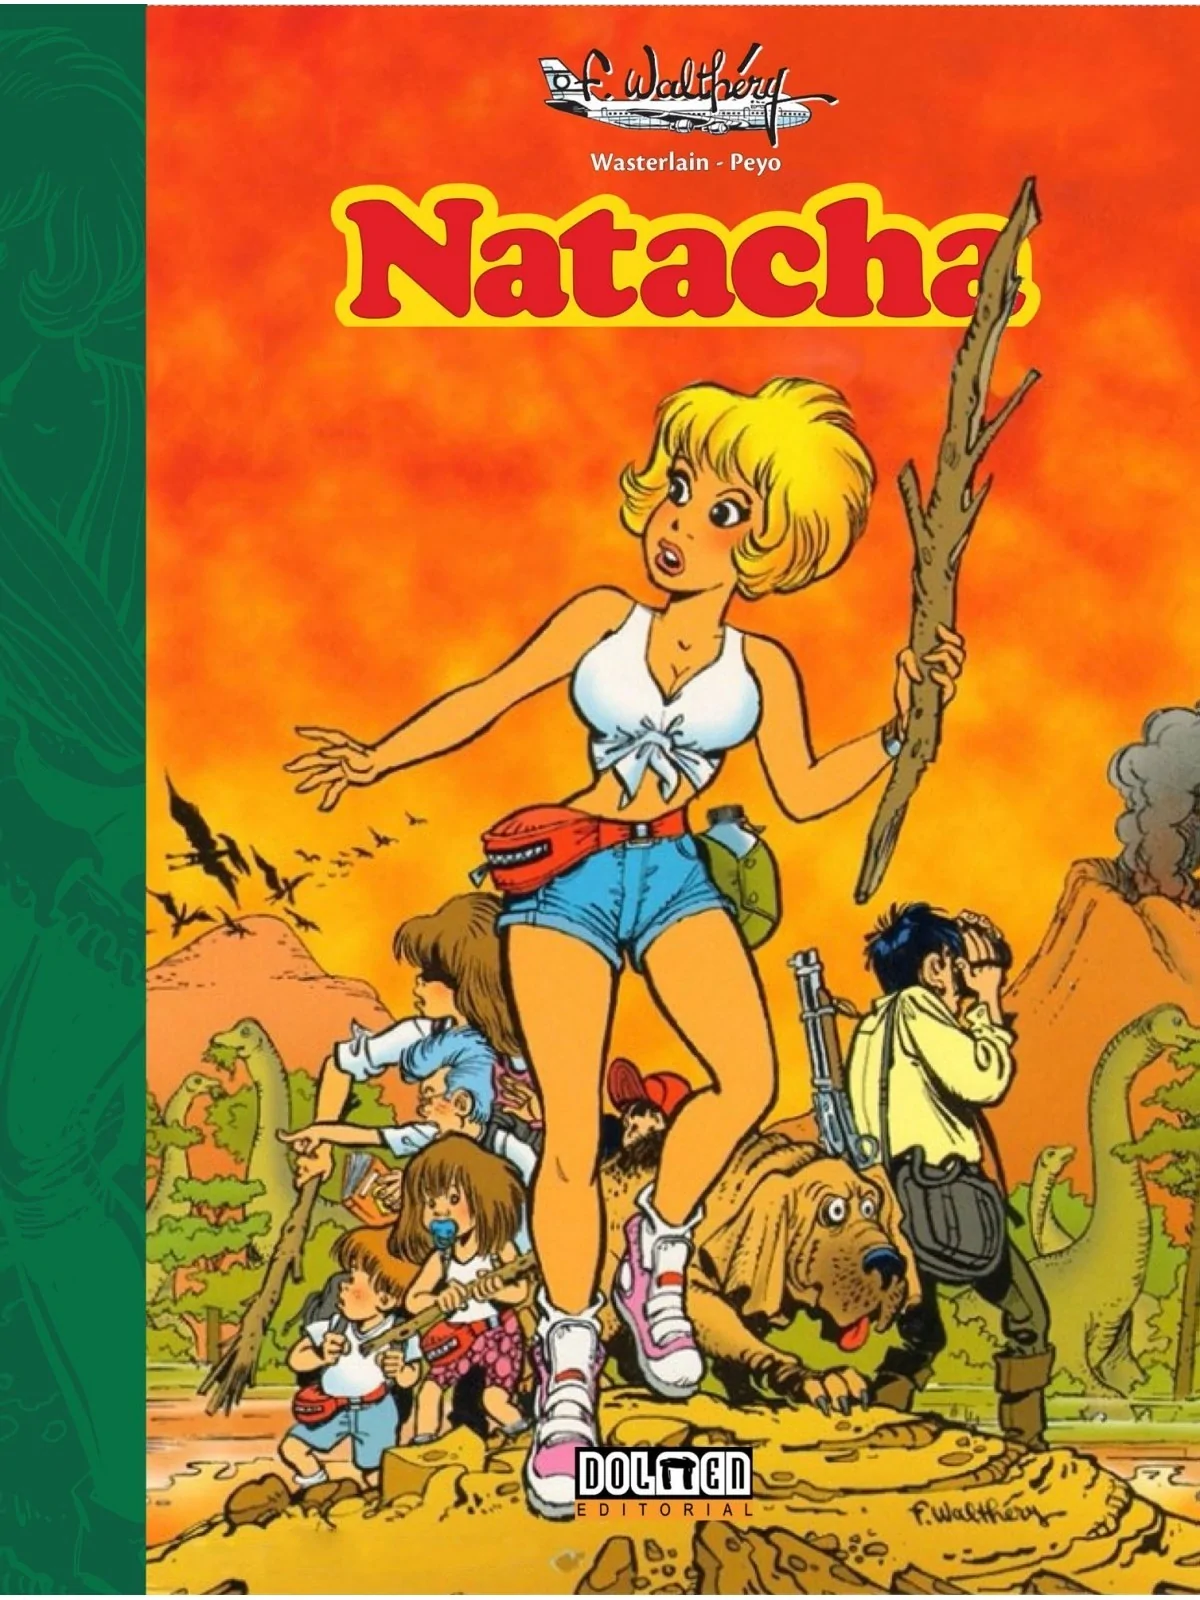 Comprar Natacha barato al mejor precio 28,45 € de DOLMEN EDITORIAL